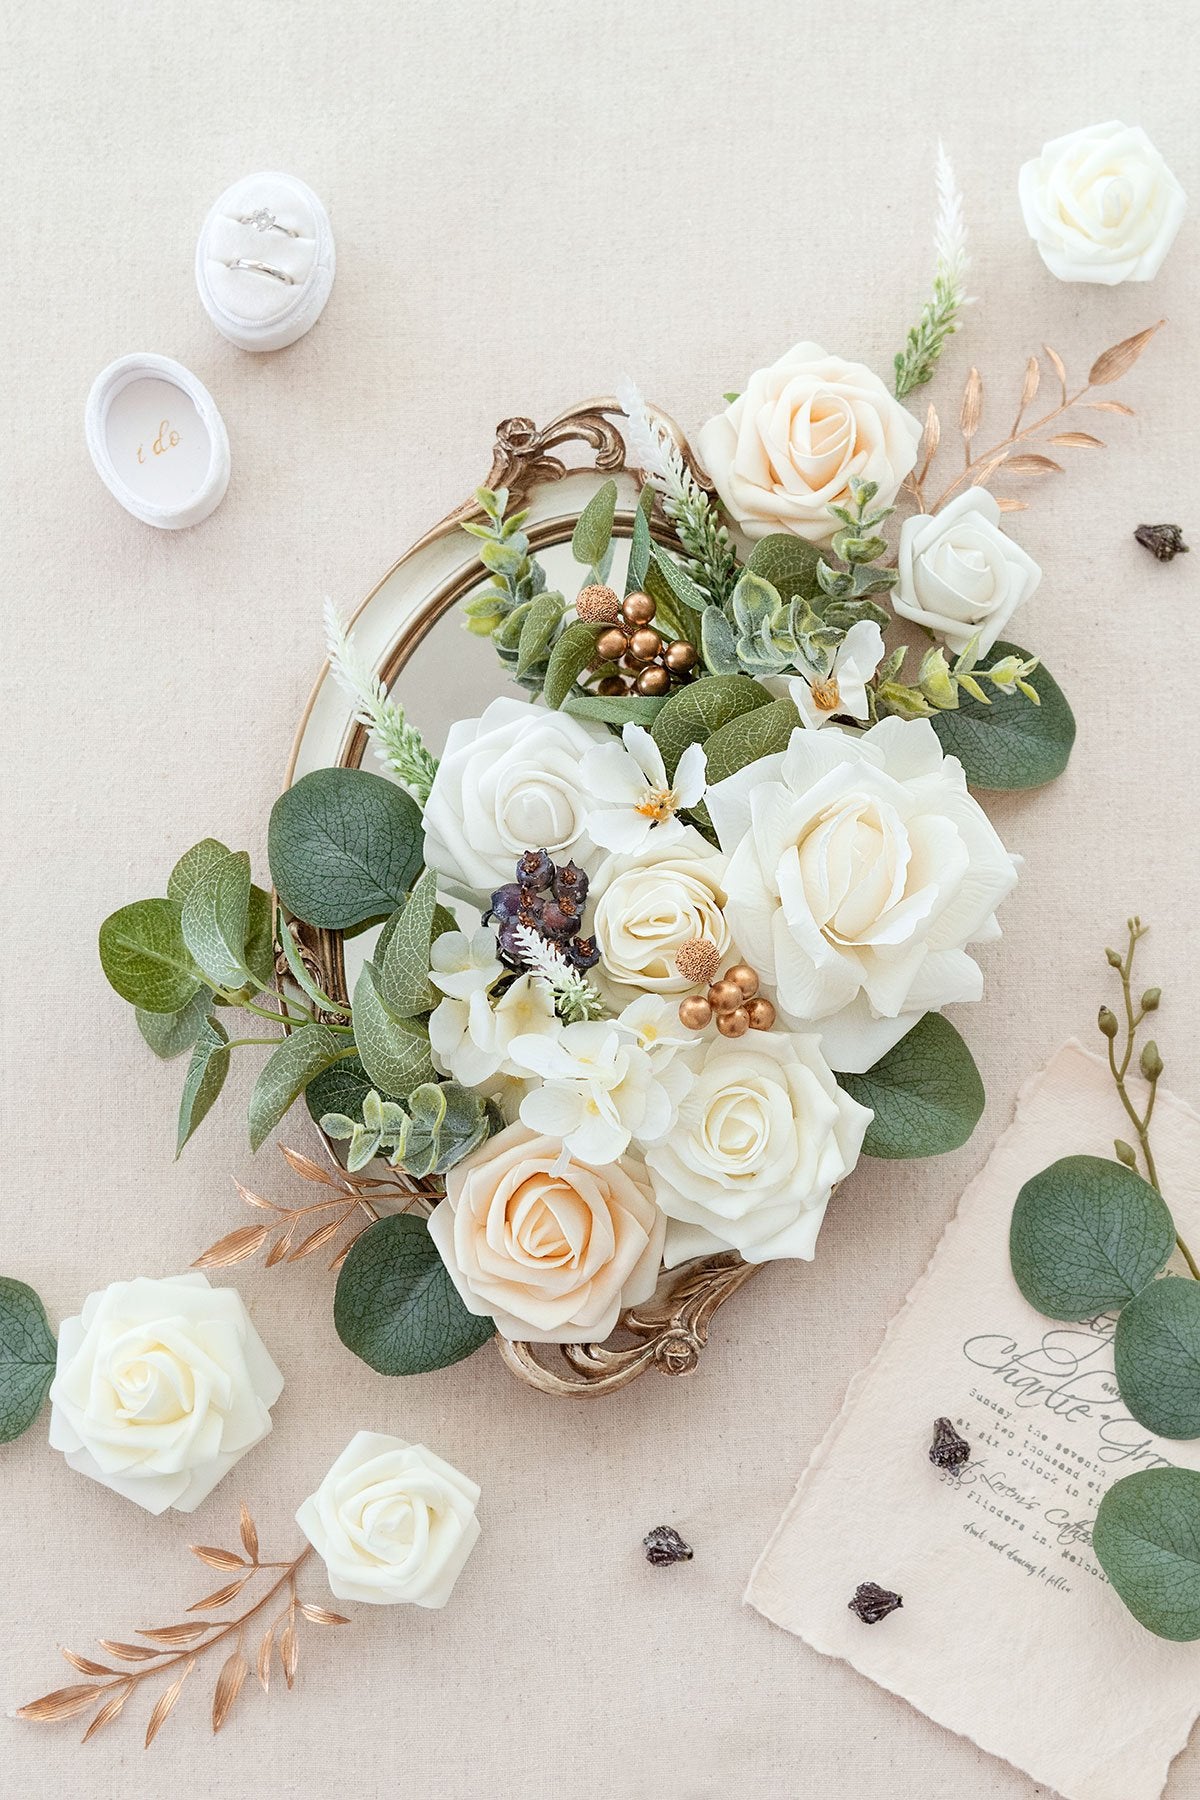 Natural White & Ivory Designer Flower Boxes